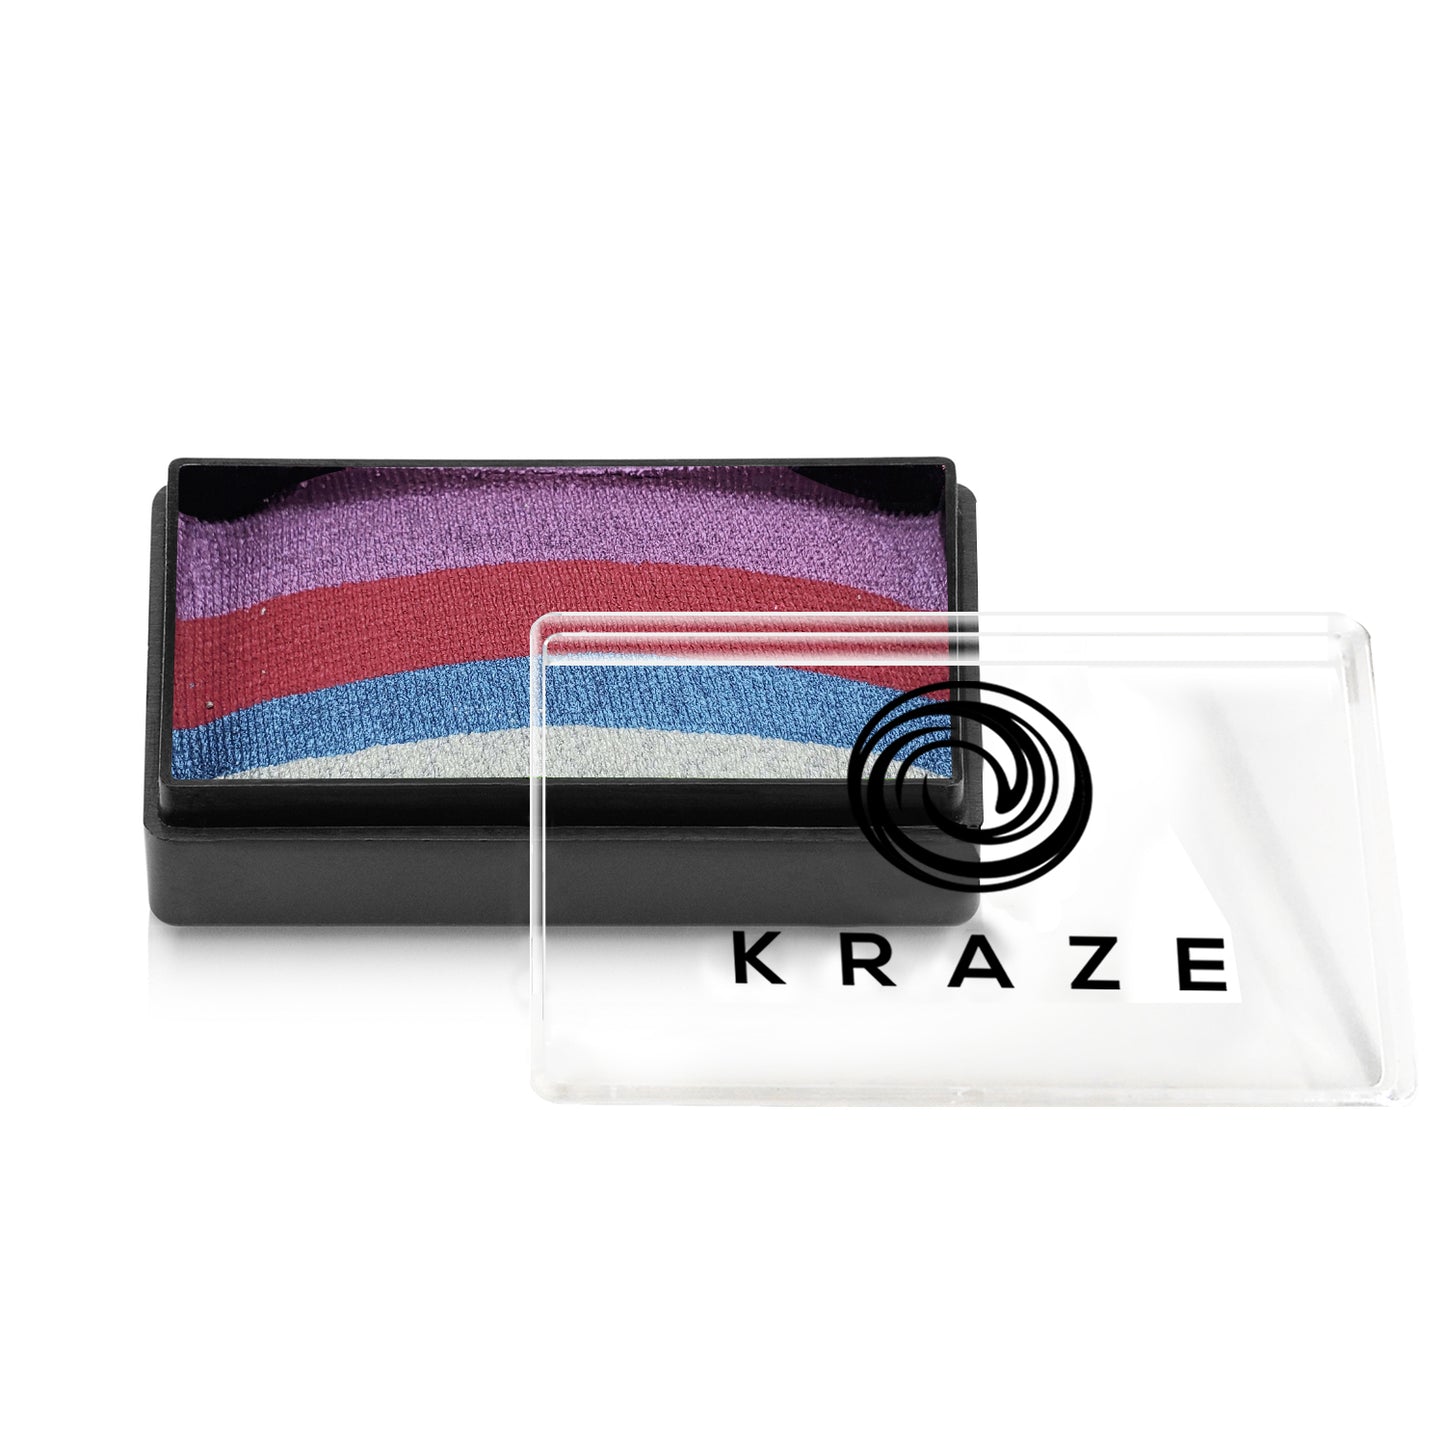 Kraze FX Dome Stroke - Festive (25g)